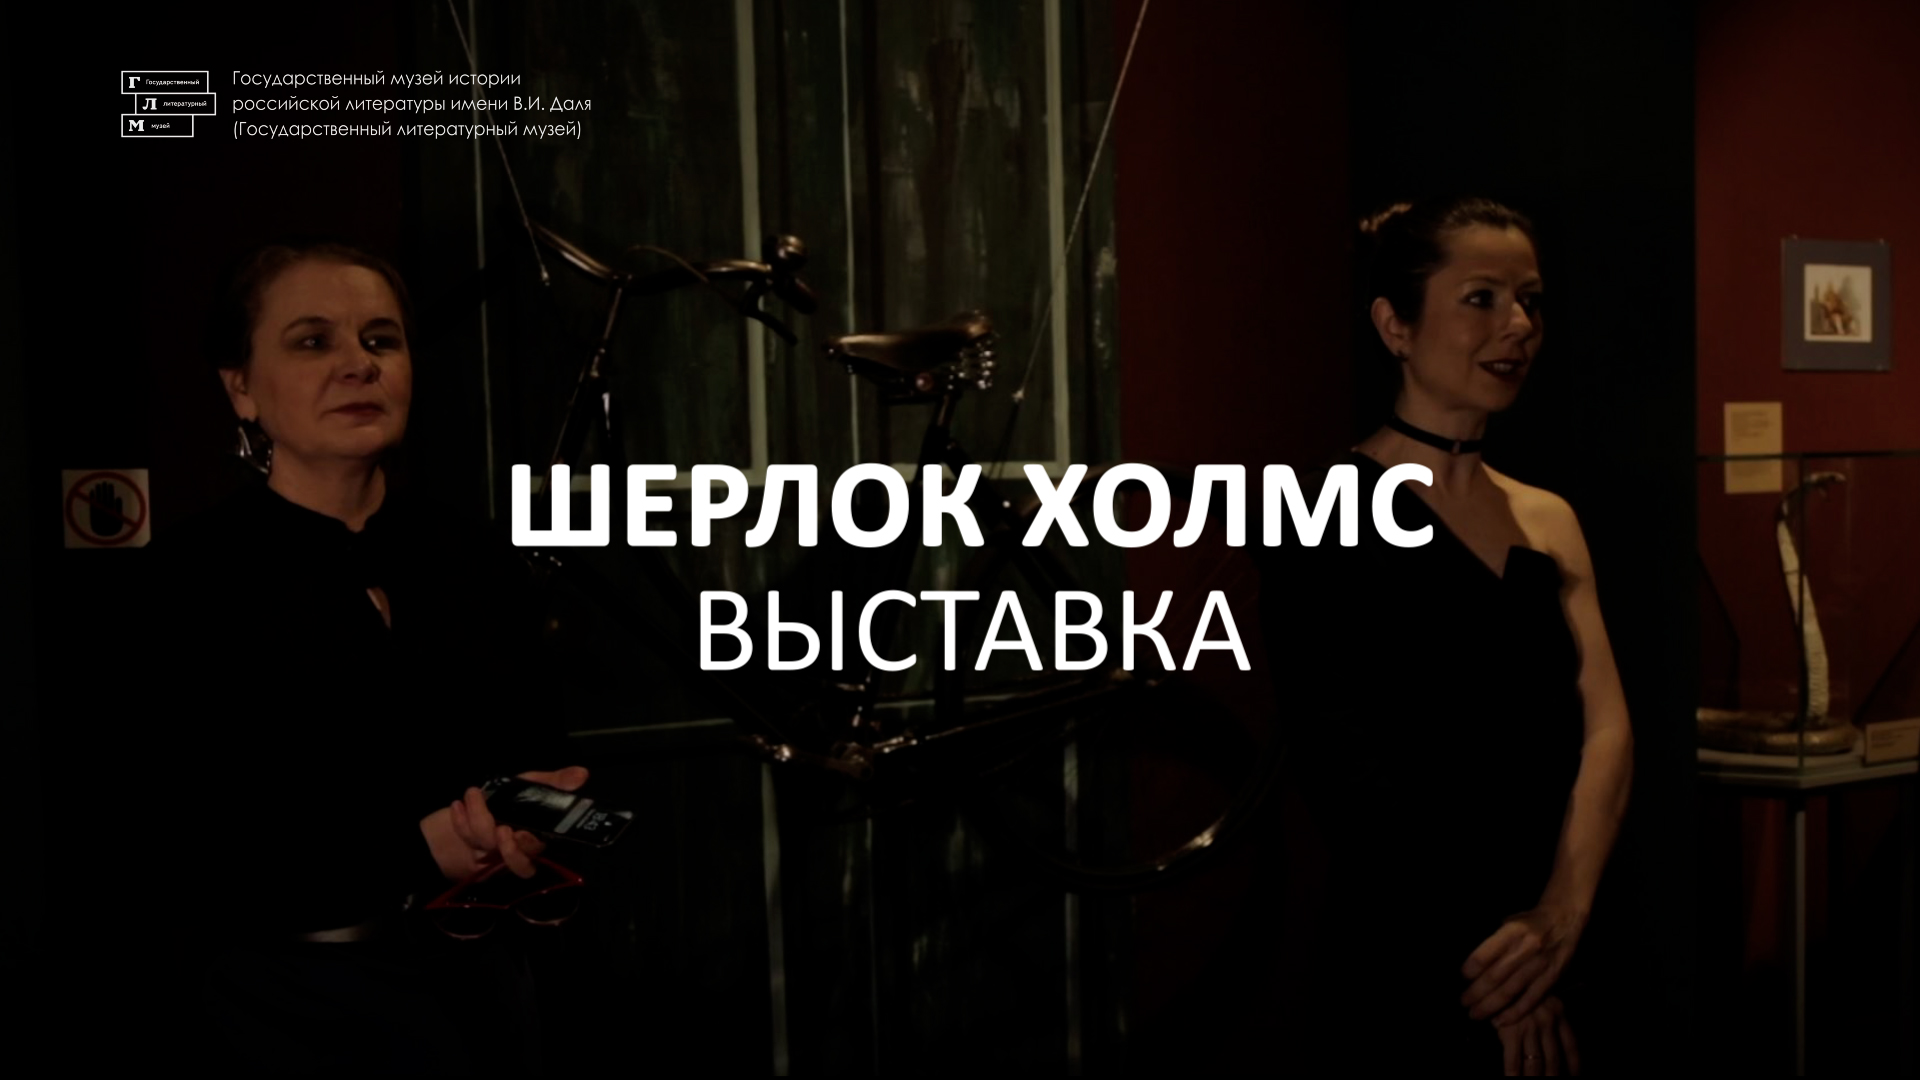 Выставка «Приключения Шерлока Холмса в России»